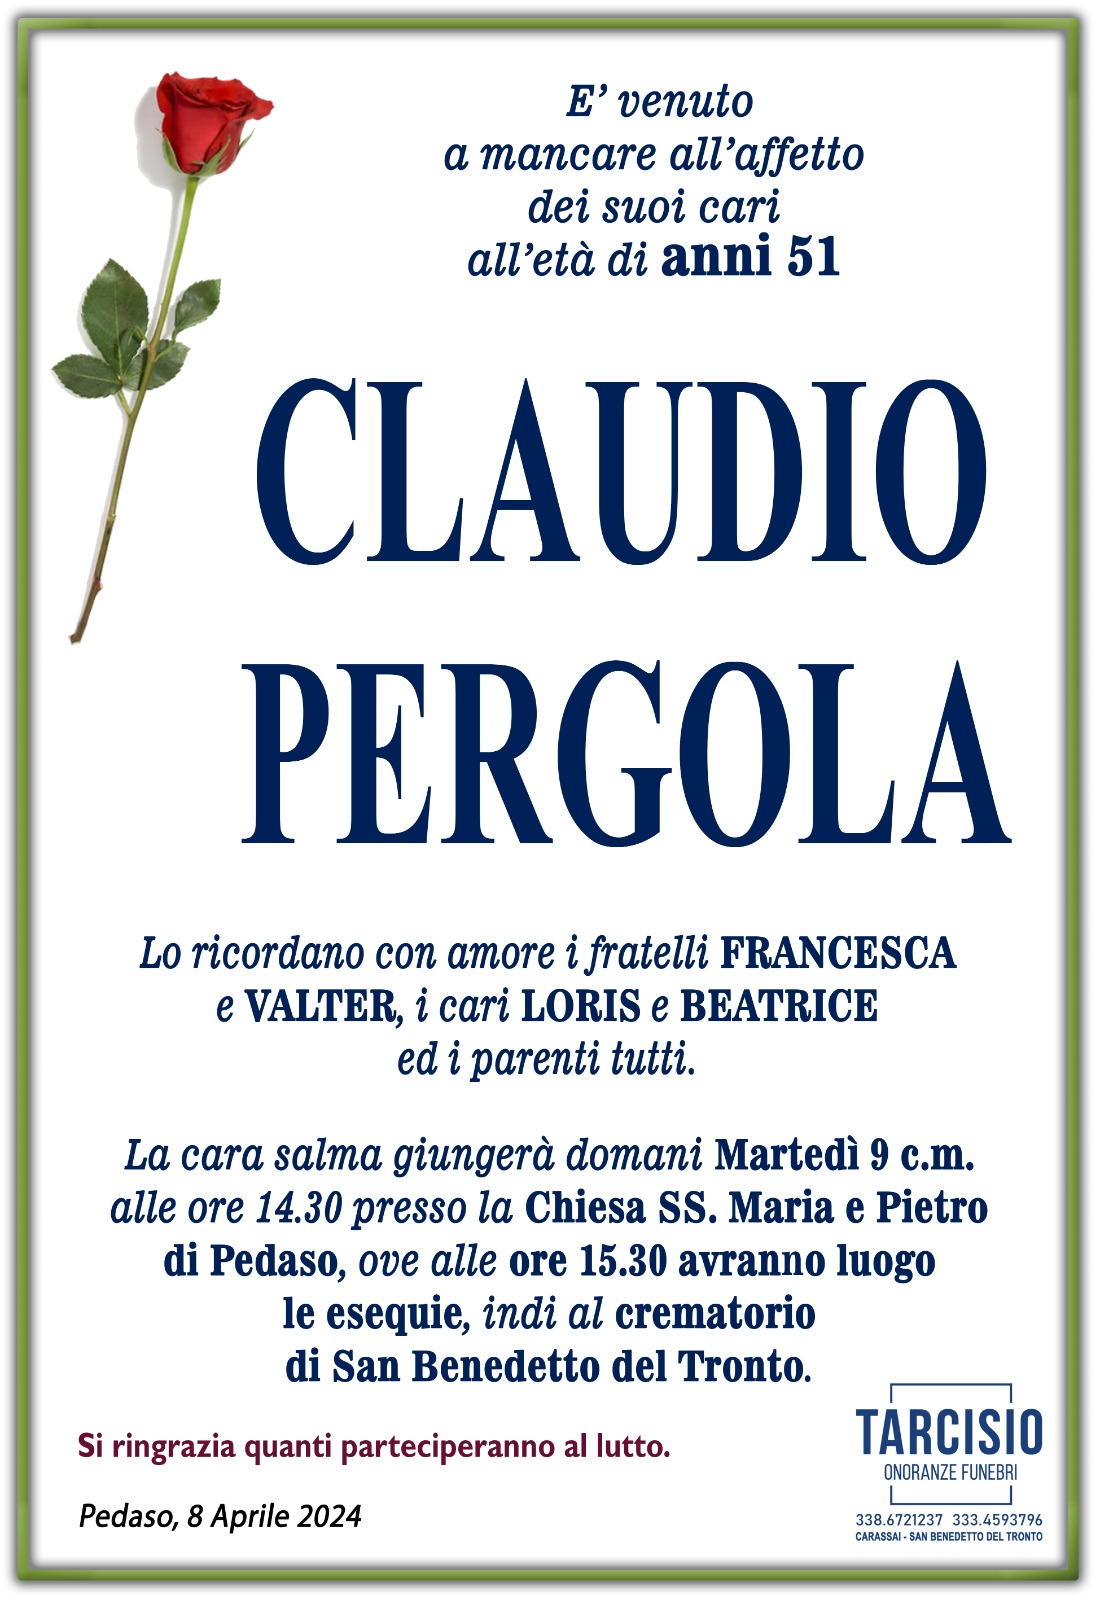 Claudio Pergola